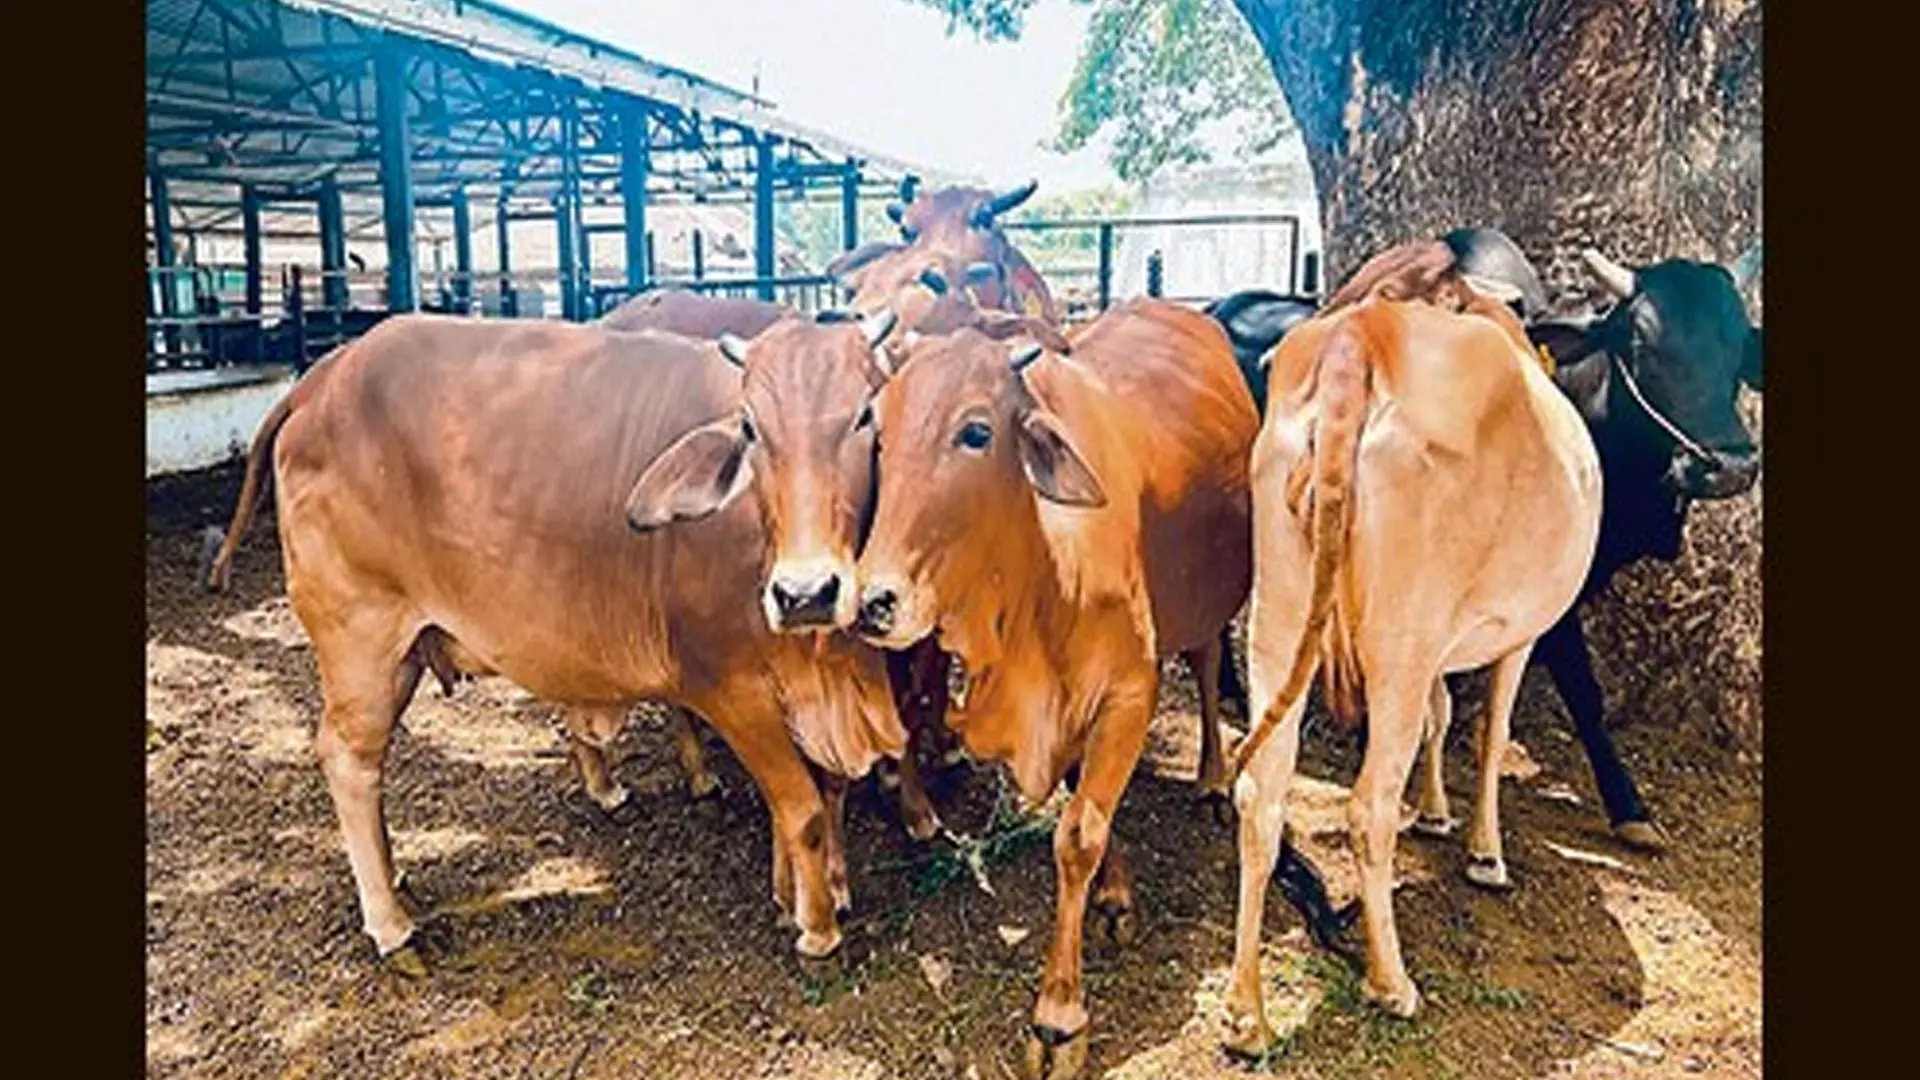 PUNE: कृषि महाविद्यालय अब ‘साहिवाल’ नस्ल की गाय का डेटा सेंटर बनेगा